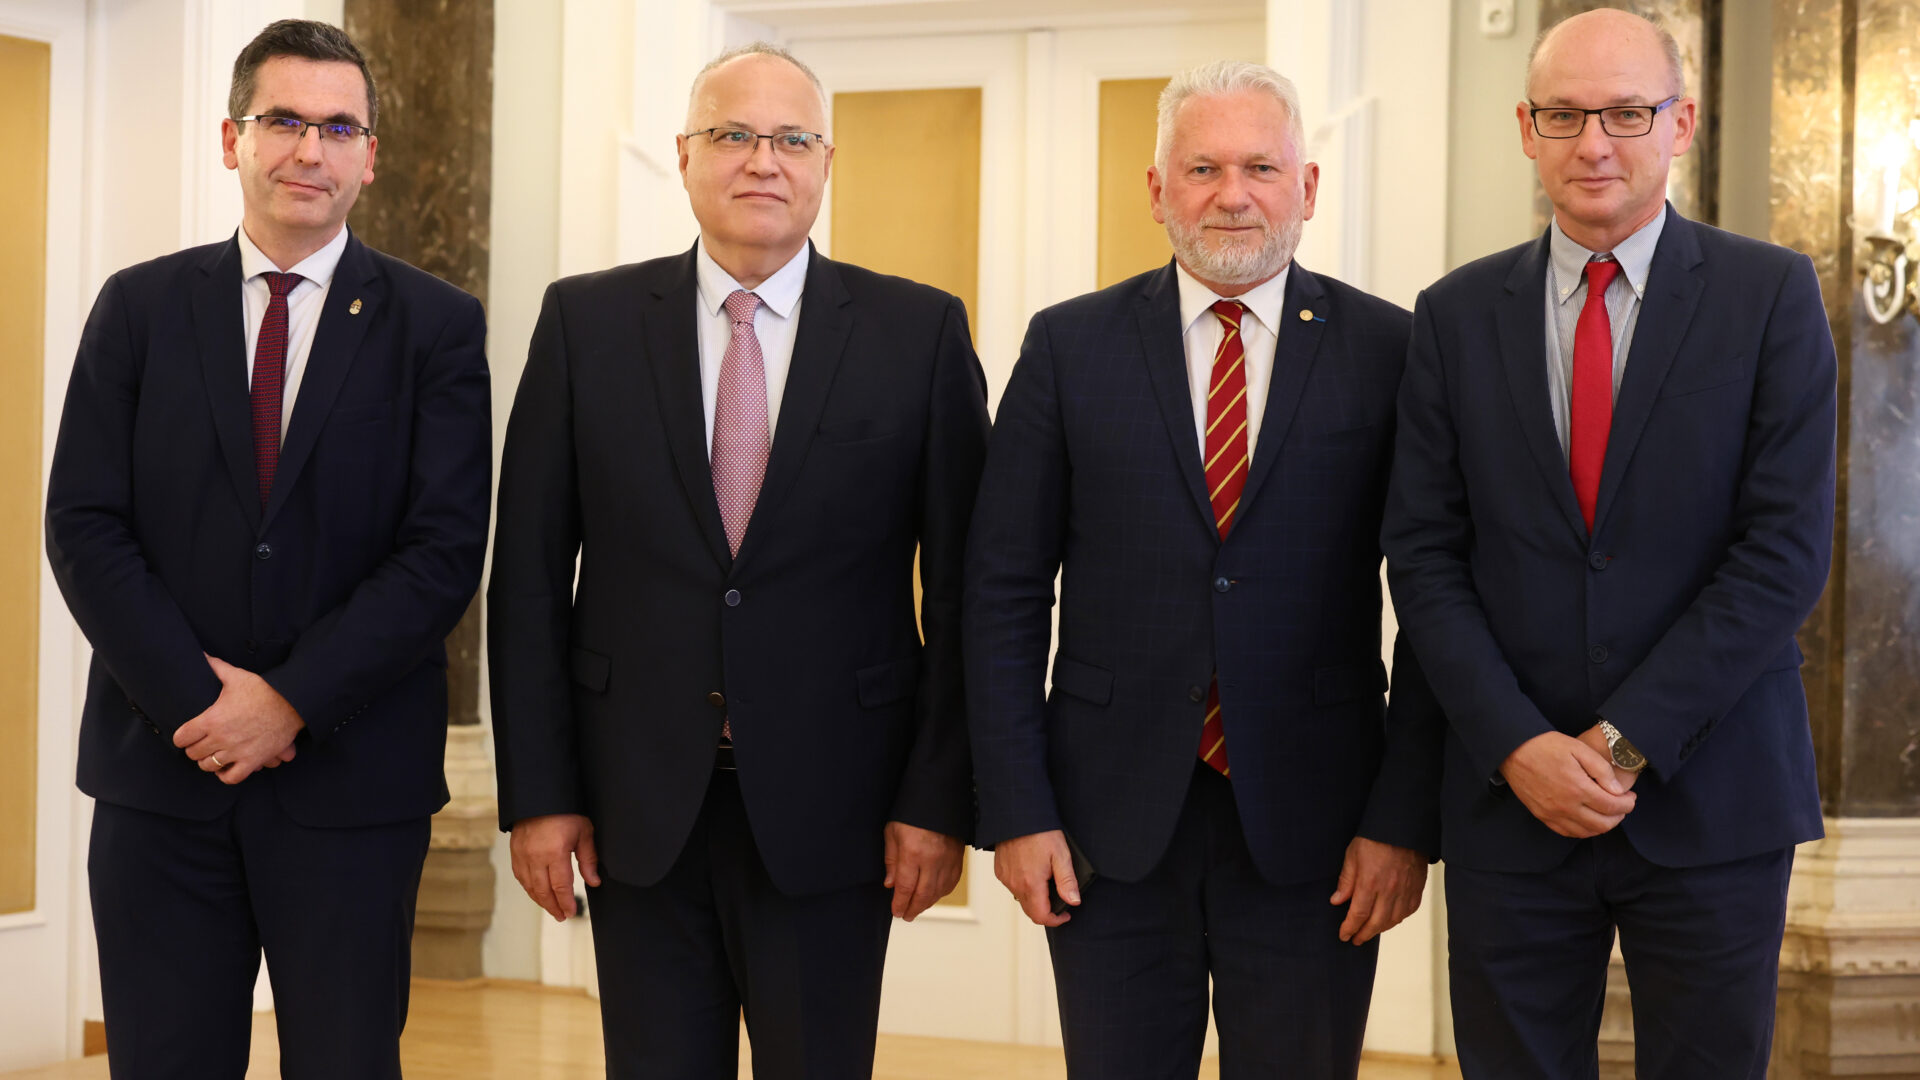 Prof. Dr. Levente Kovács, László Borhy, Attila Fábián and István Andrási after their election